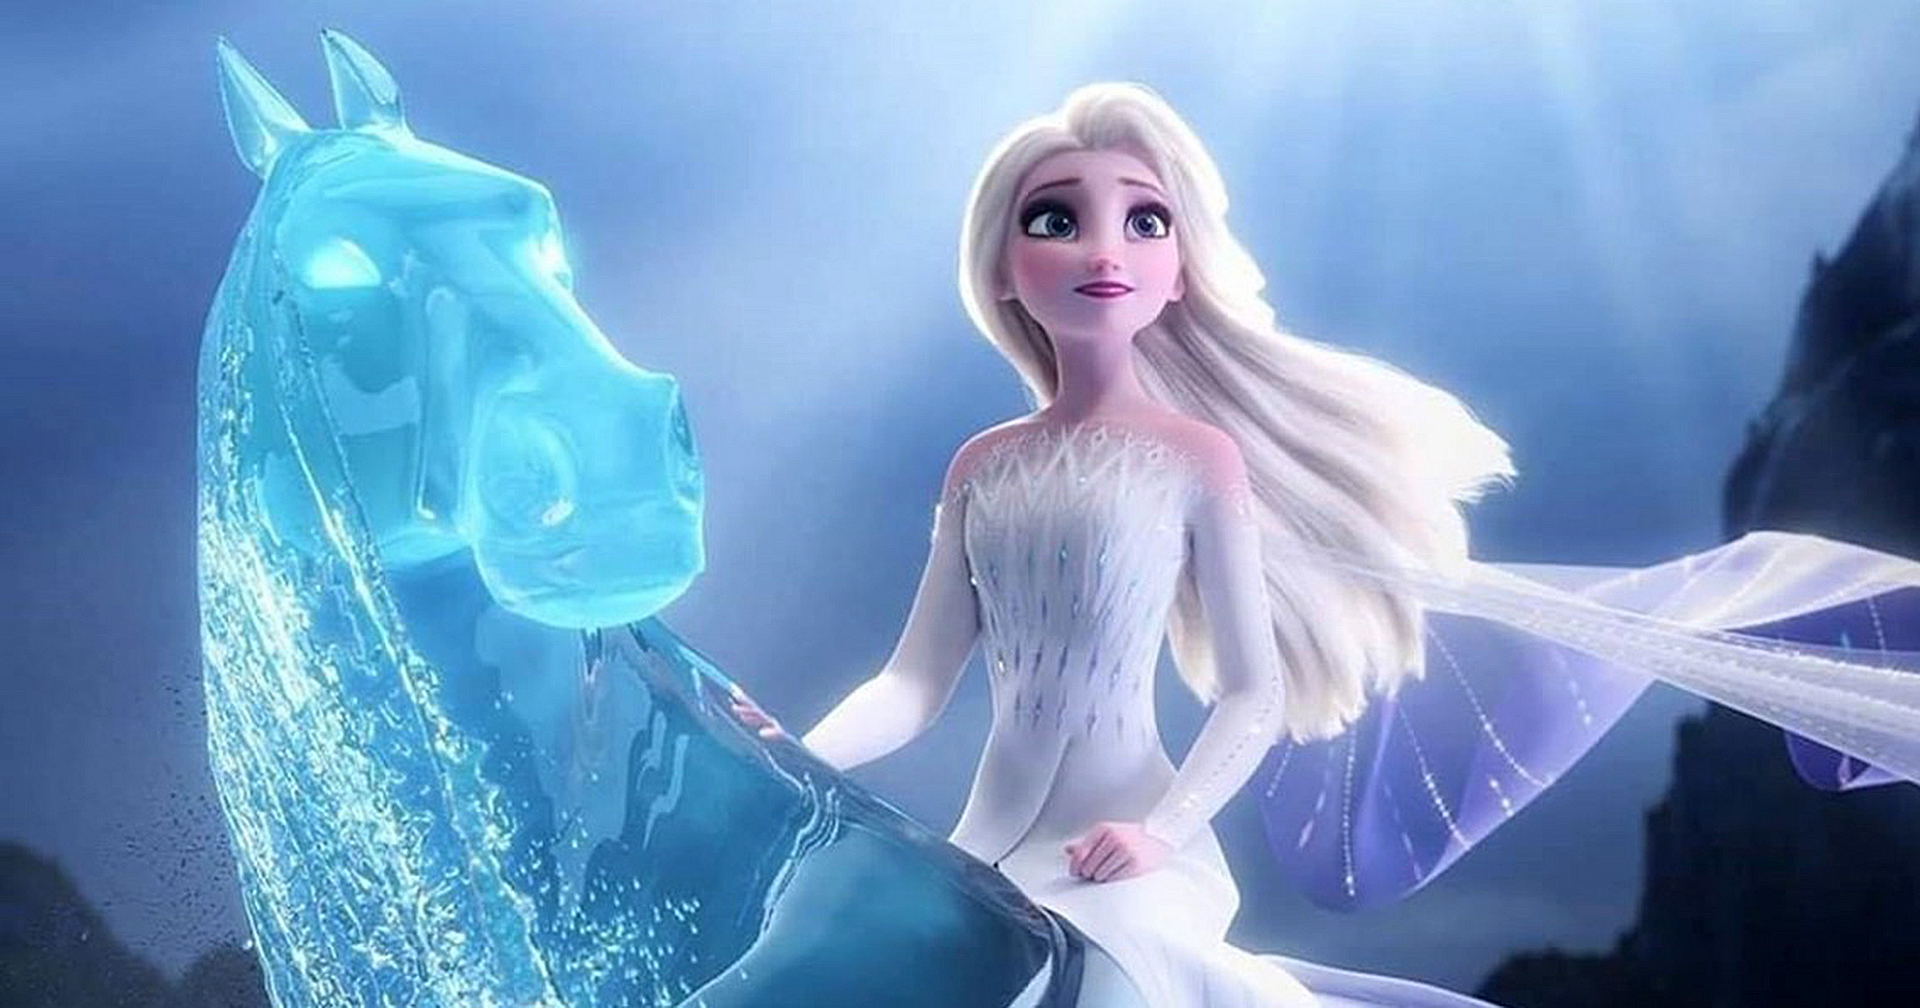 ผู้ให้เสียงพากย์ Elsa ยืนยัน ‘Frozen 3’ มาแน่นอน : แต่สตูดิโอยังปิดรายละเอียดเป็นความลับ